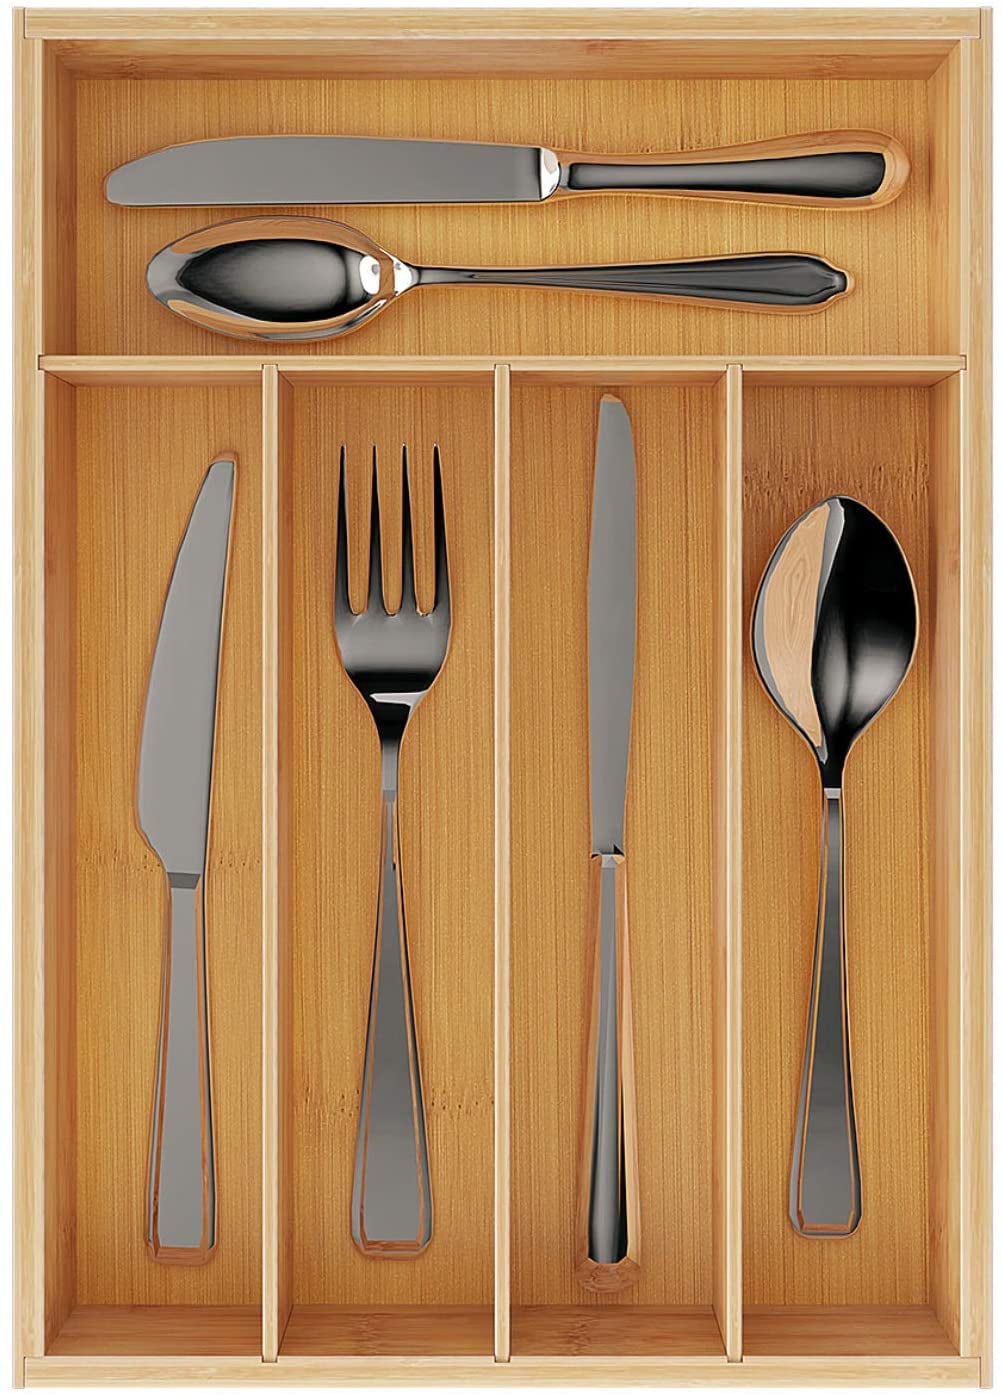 Silverware Tray Organizer Drawer Flatware Cutlery Storage Kitchen Utensil Holder 